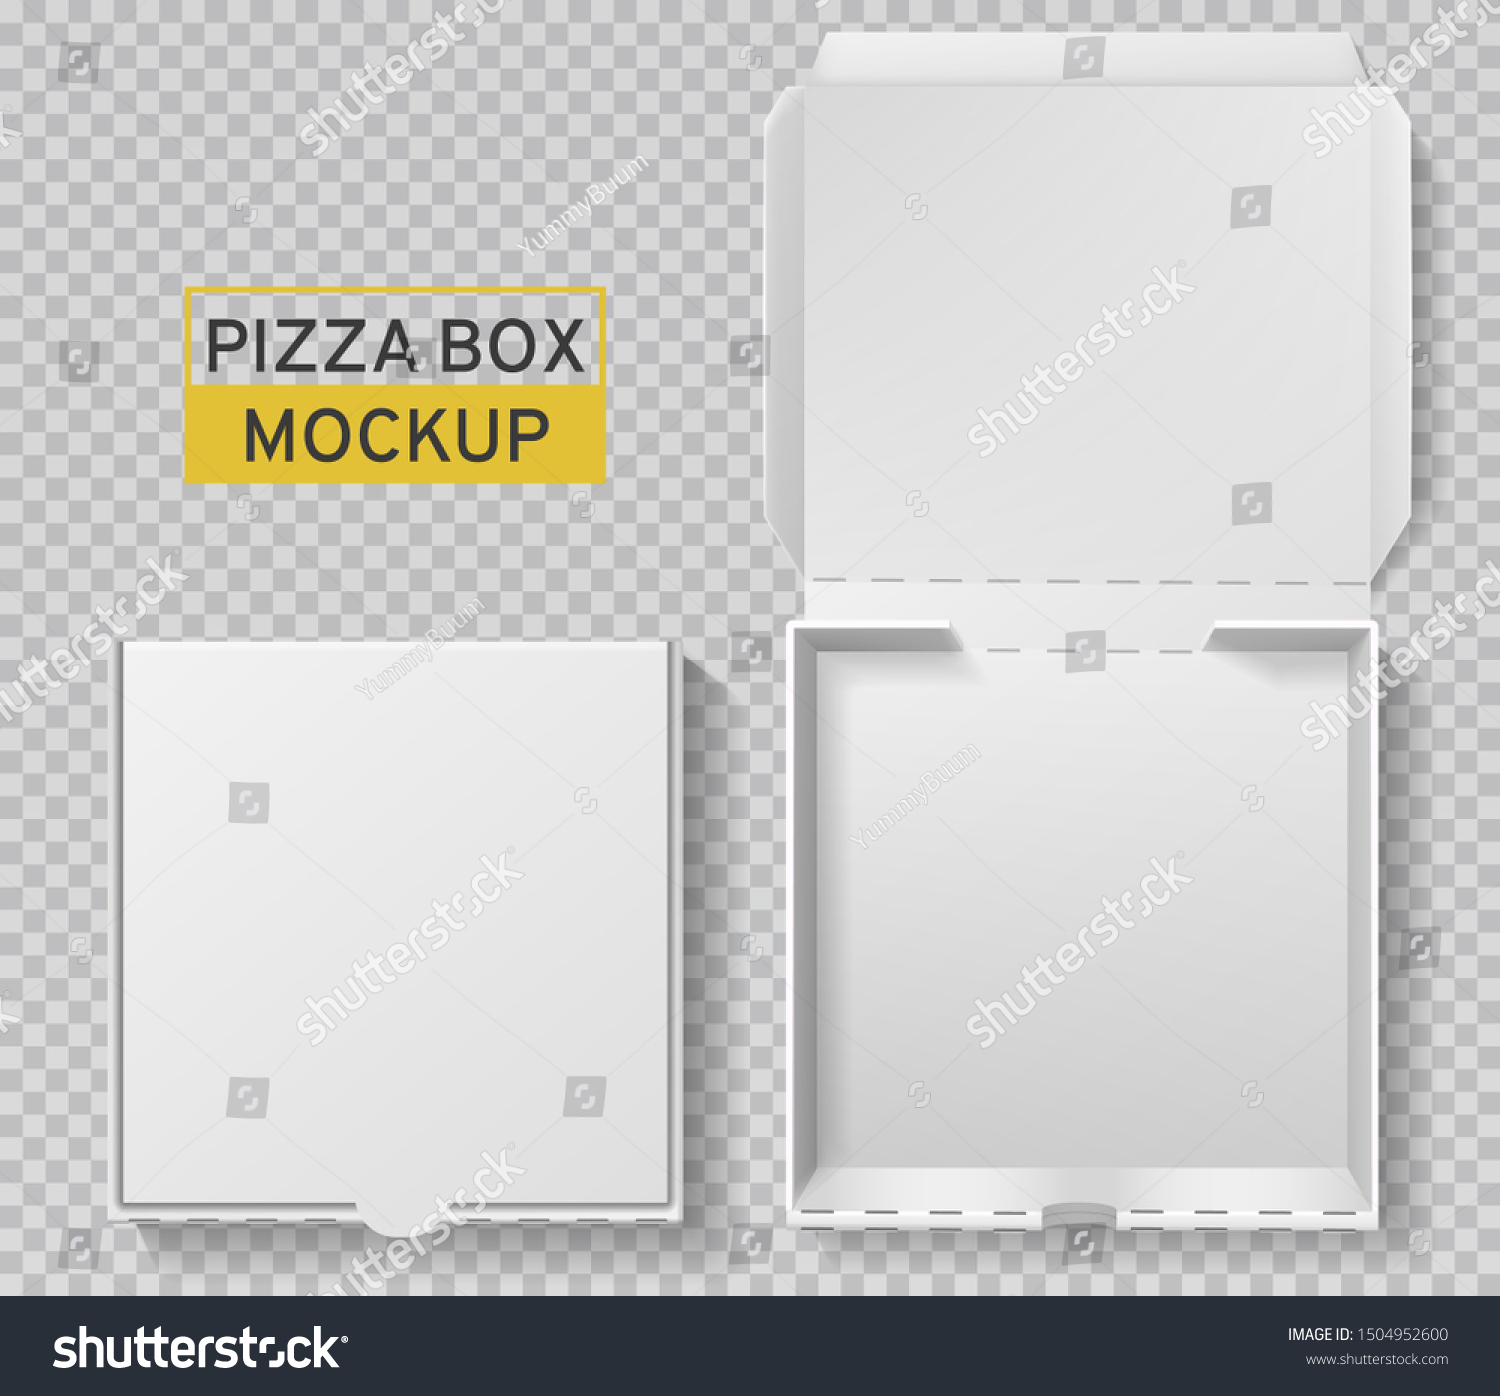 closed pizza box